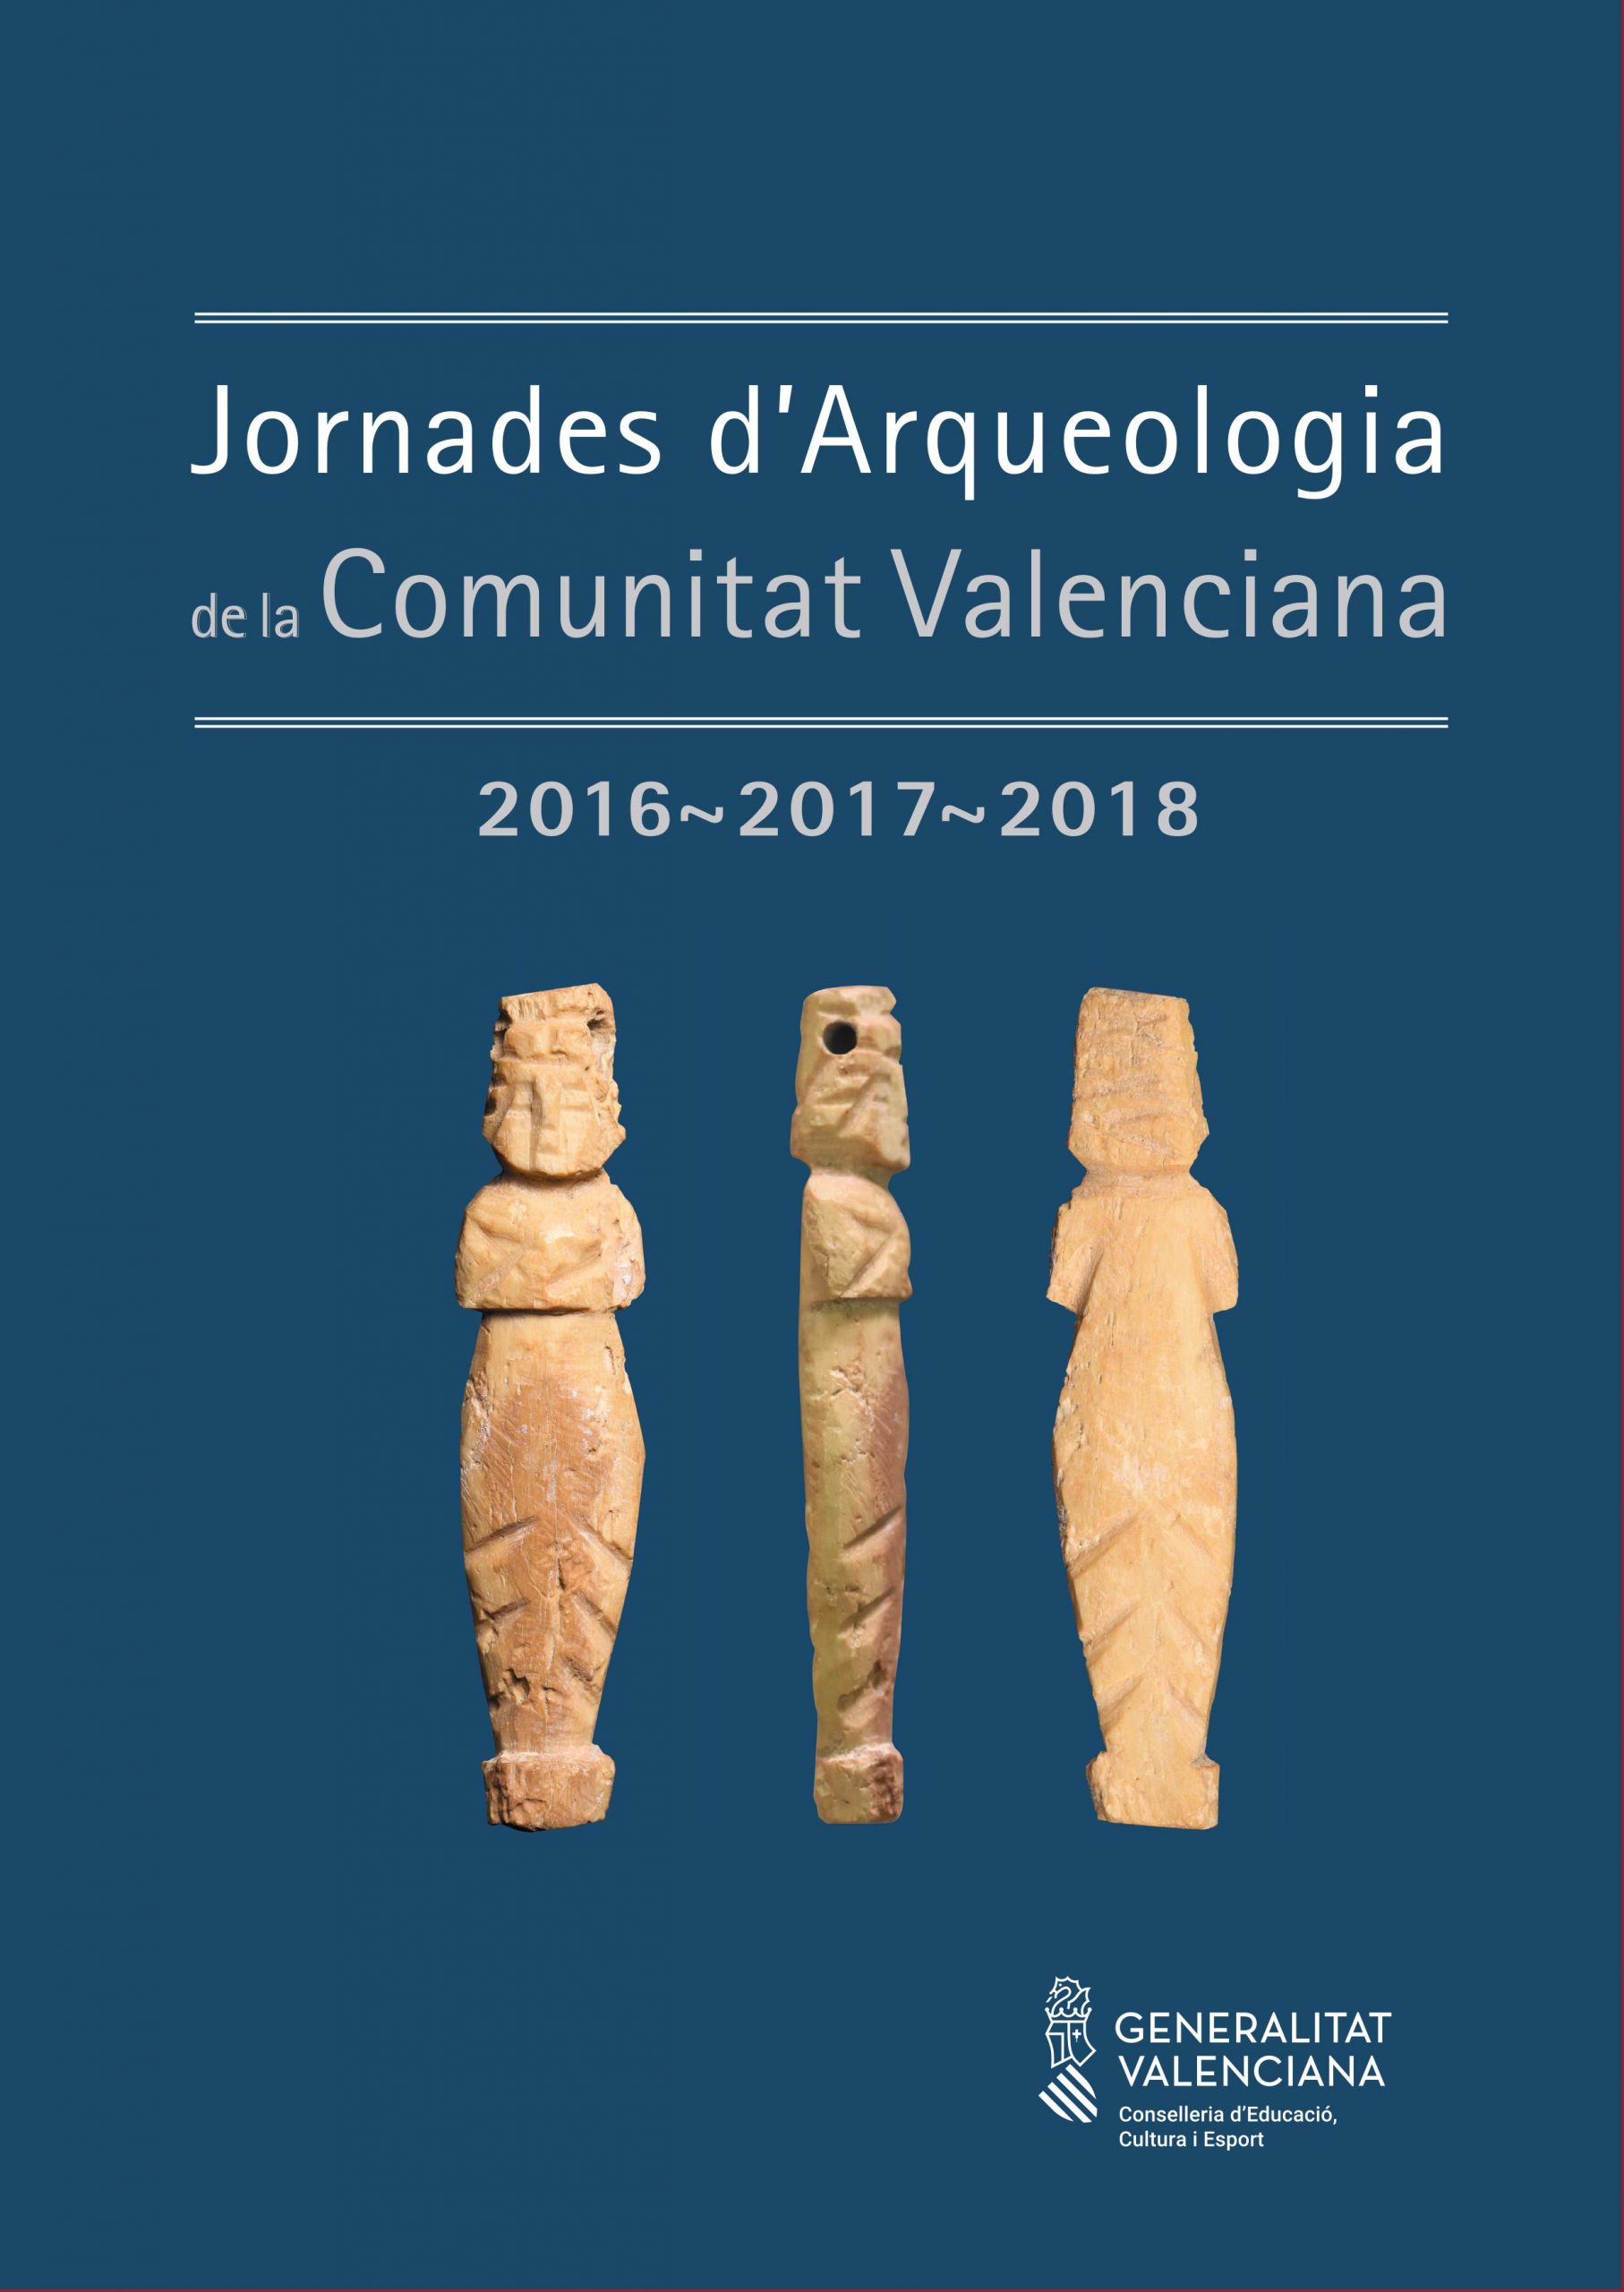 Título: Aplicación de tecnología digital a la documentación de los restos arqueológicos de la villa romana de Sant Gregori (Burriana-Castellón). Jornades d'Arqueologia de la Comunitat Valenciana (2016-2017-2018).